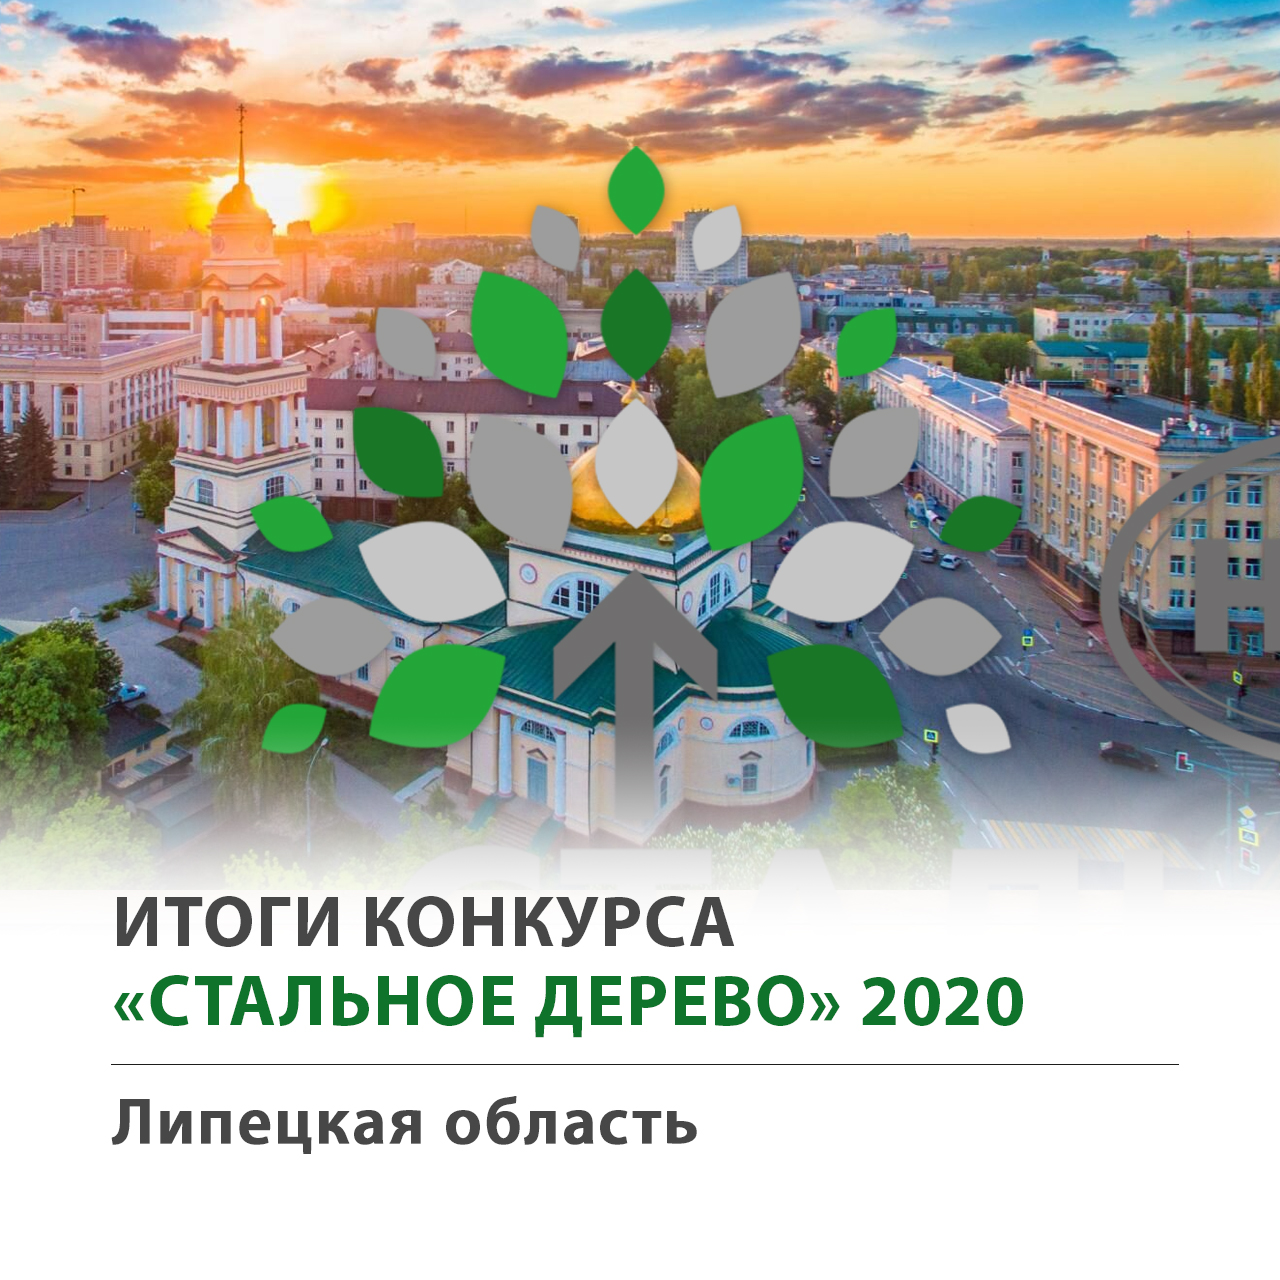 Стальное Дерево 2020 Липецкая область